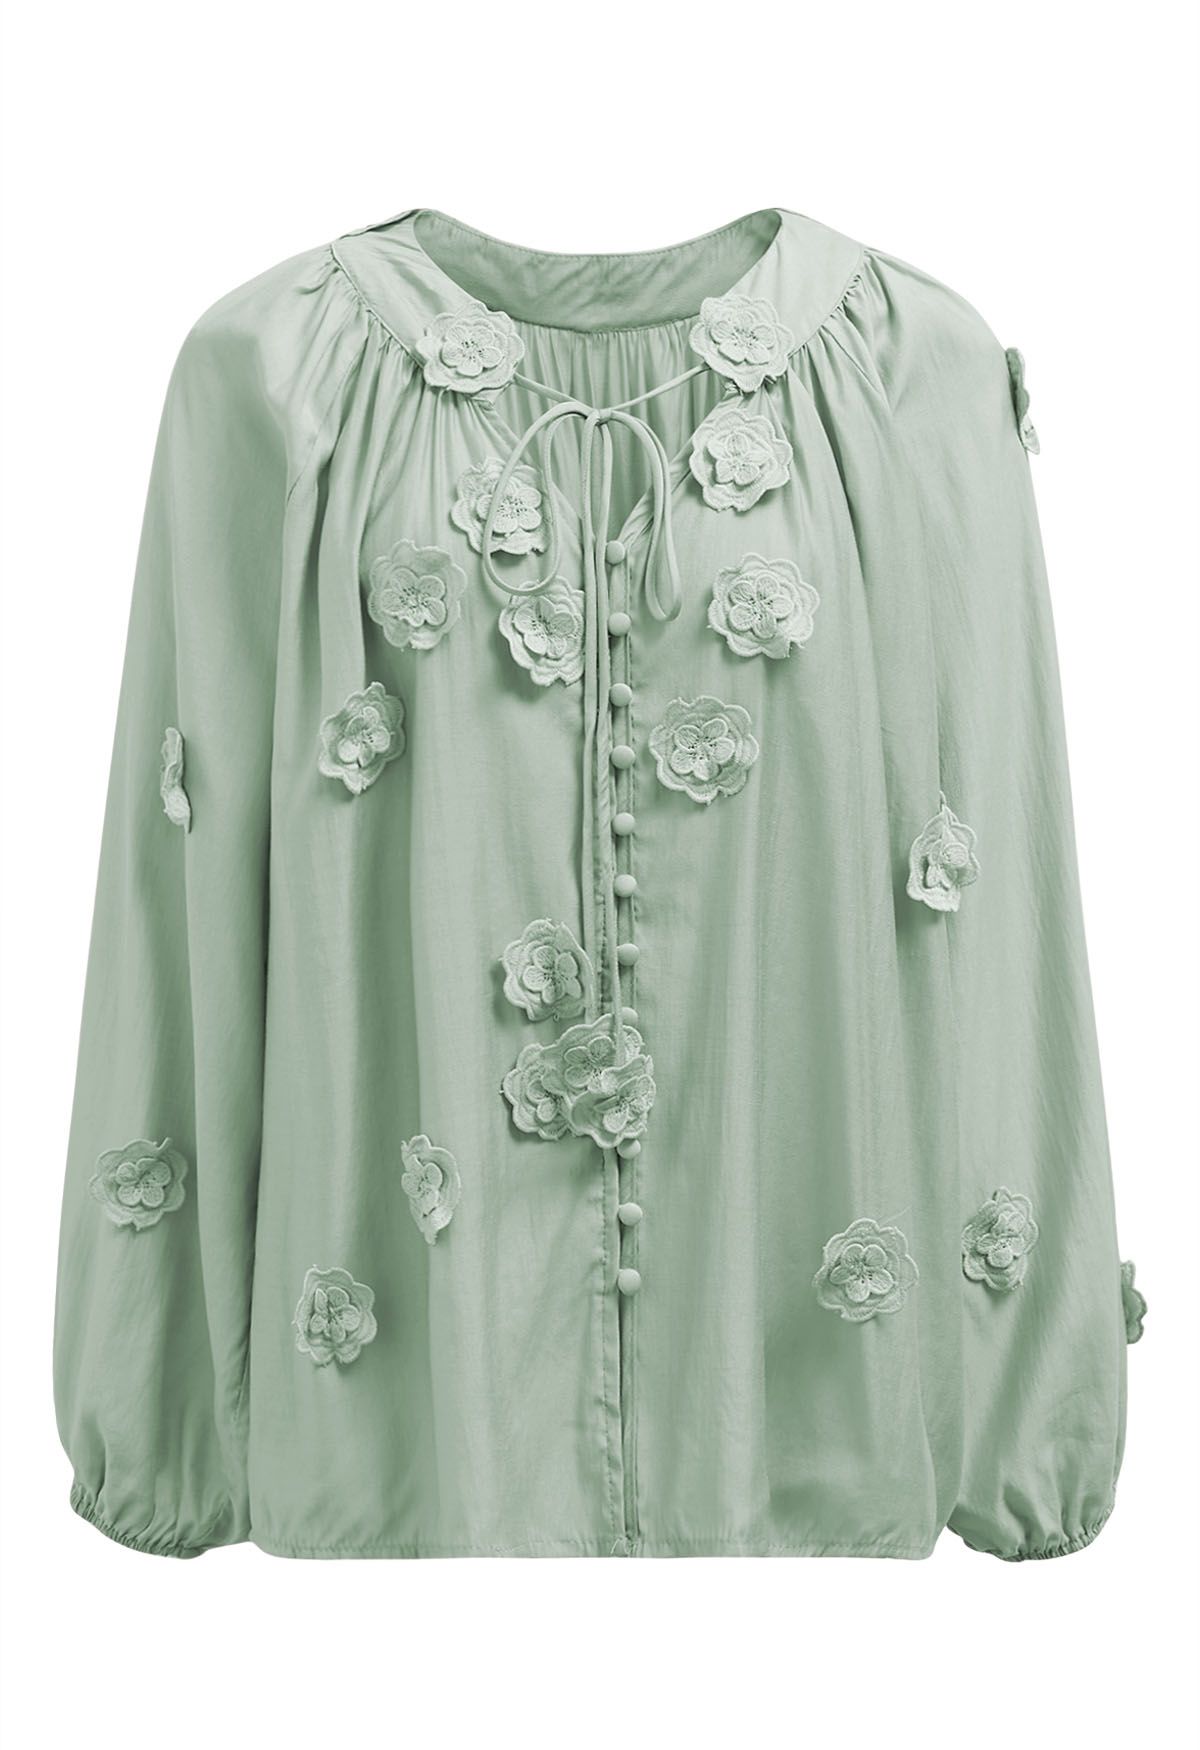 Camisa con botones de flores de encaje 3D Romantic Blossom en color menta